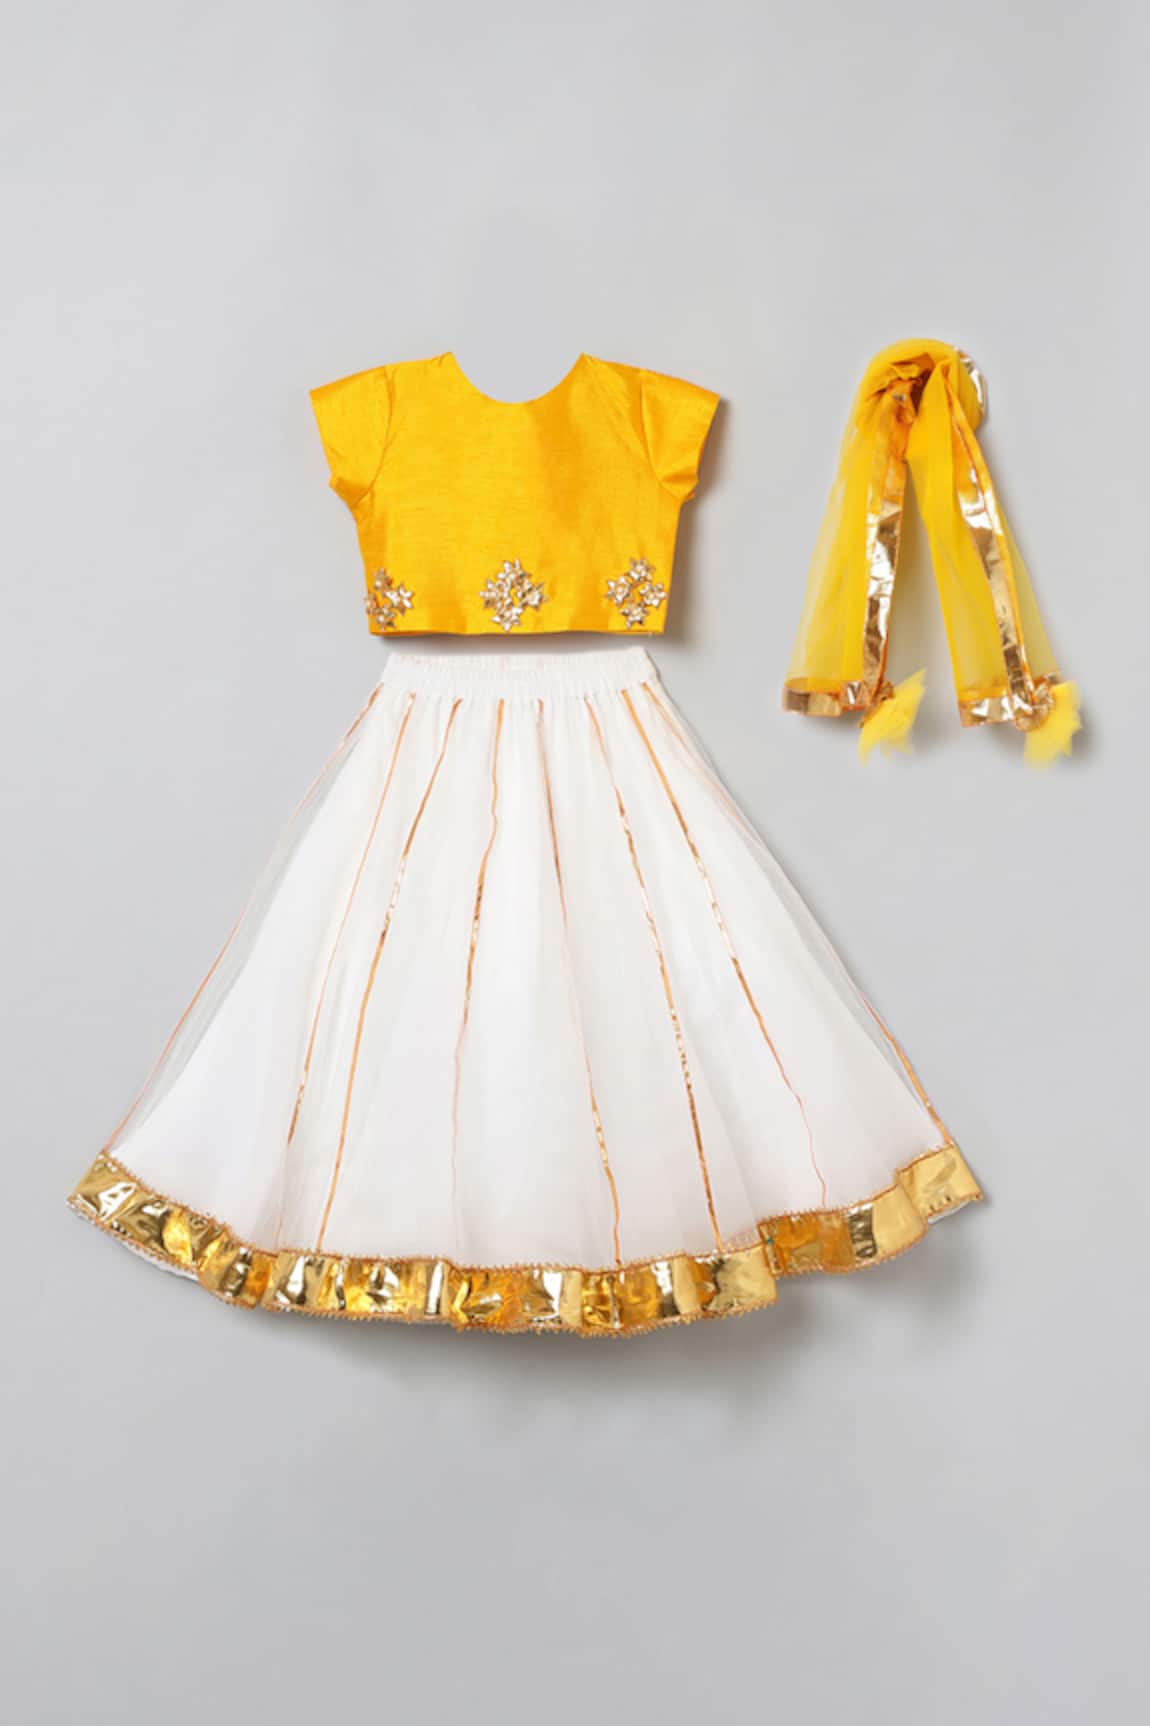 Best Lehenga Dress: अपनी बेबी गर्ल को बनाना चाहती हैं परी, तो आज ही खरीदें  ये लहंगा चोली | best lehenga dress for your baby girl to give her a  princess look |